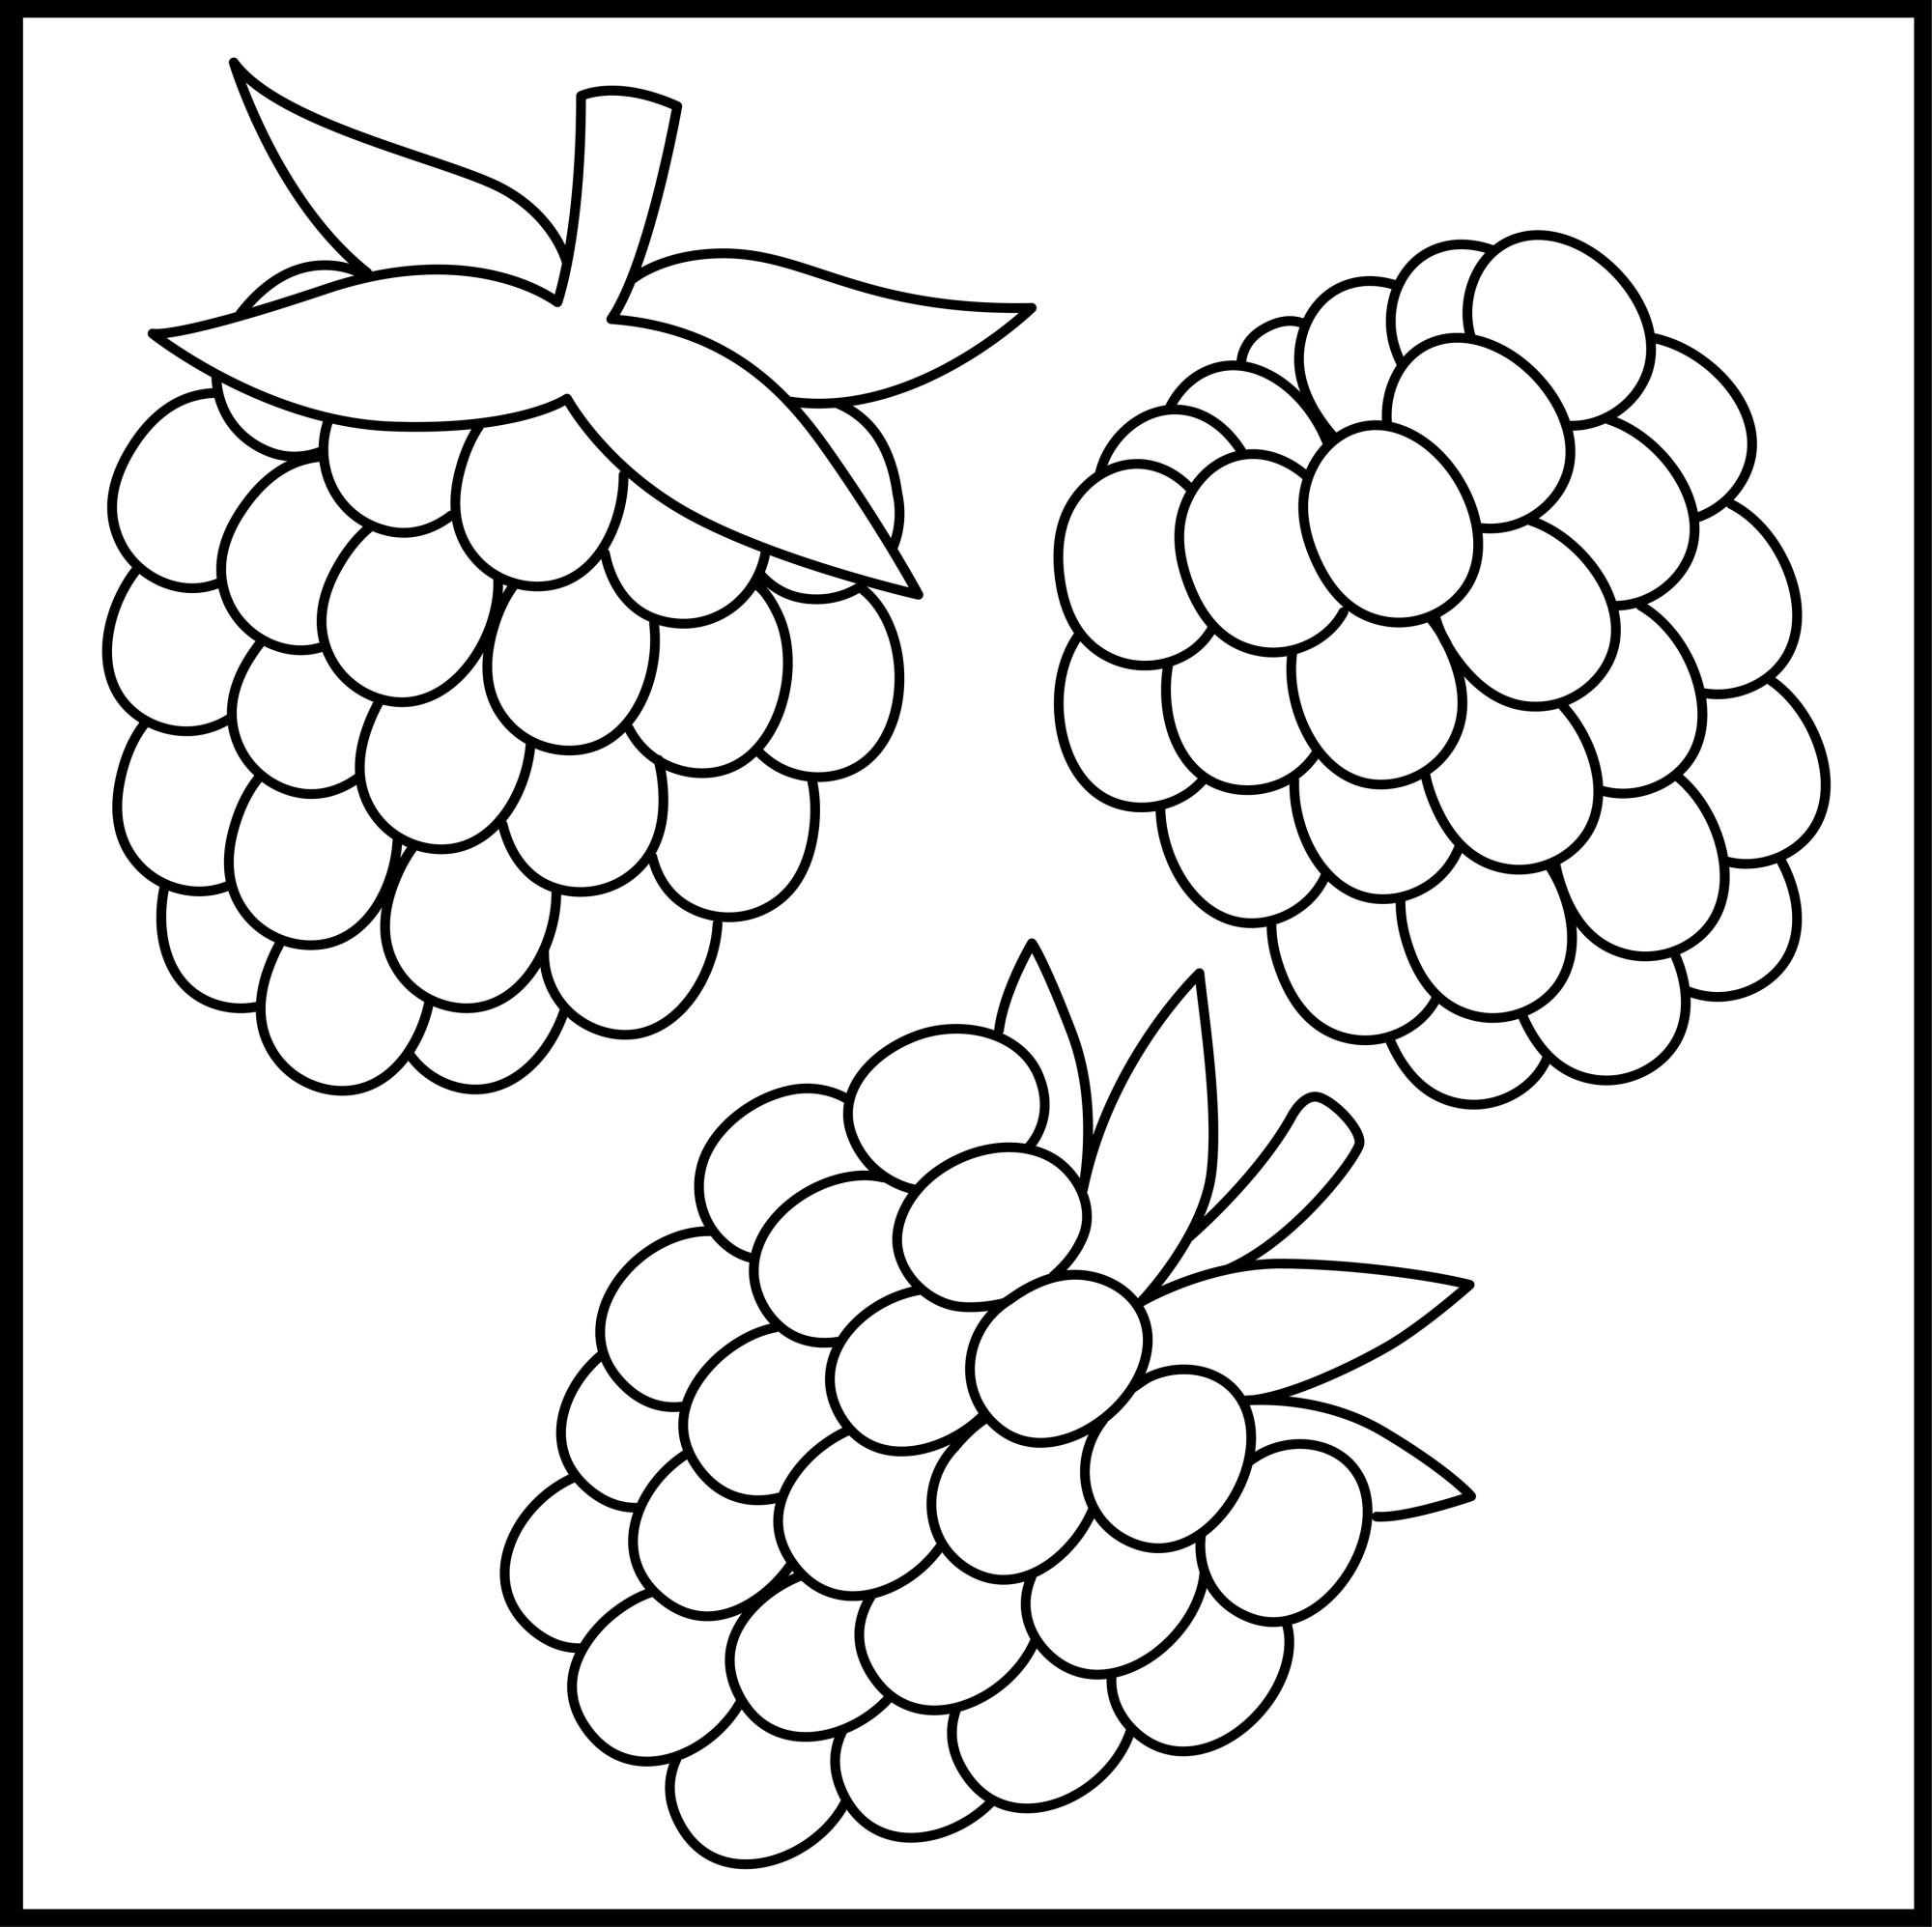 Раскраска для детей: три ягоды малины